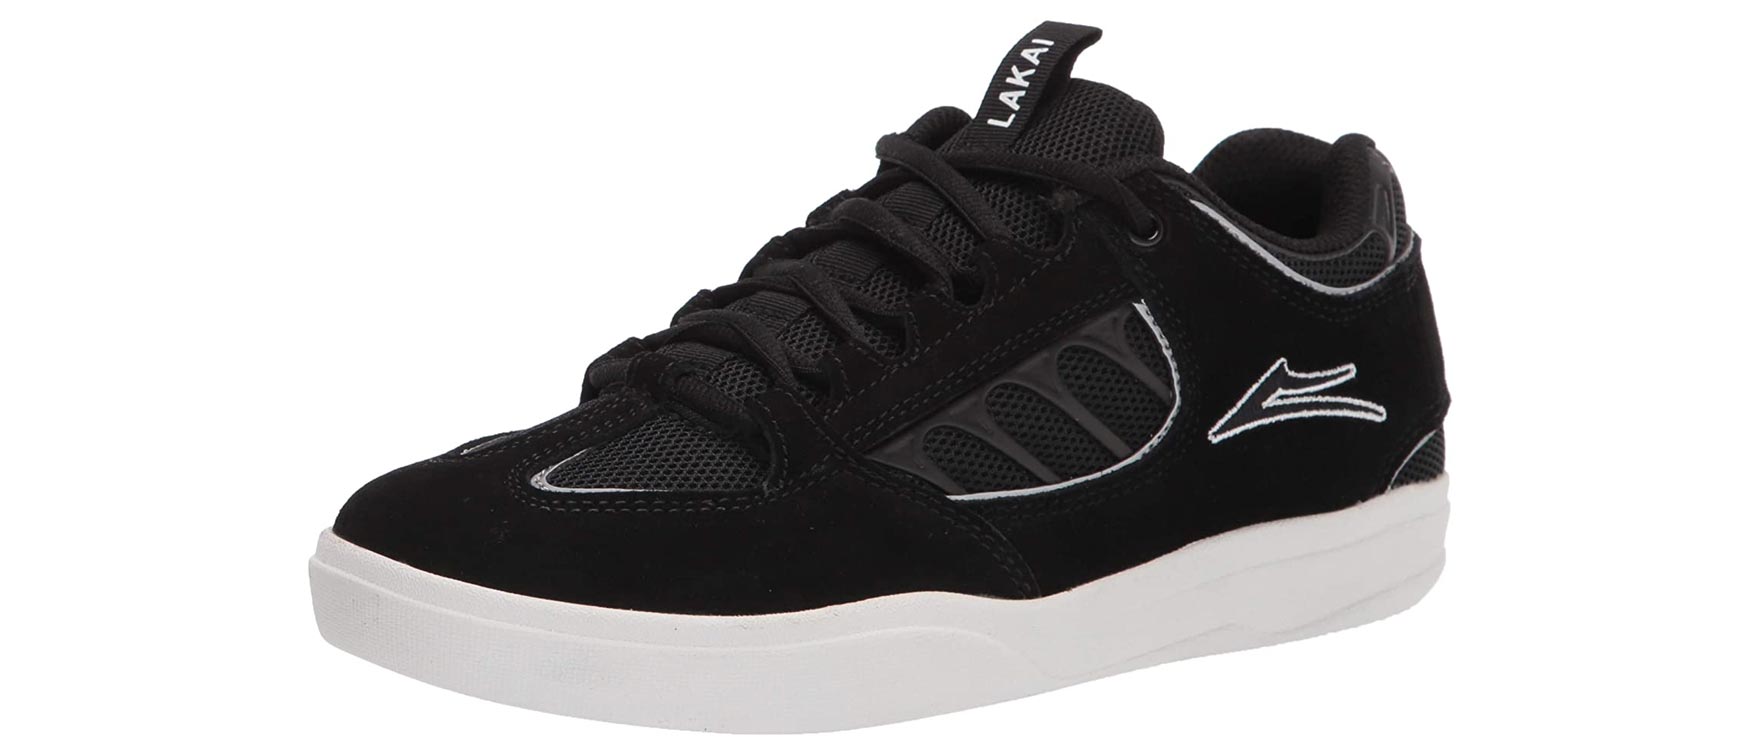 4. Lakai Footwear Mens Carroll Skate Shoe